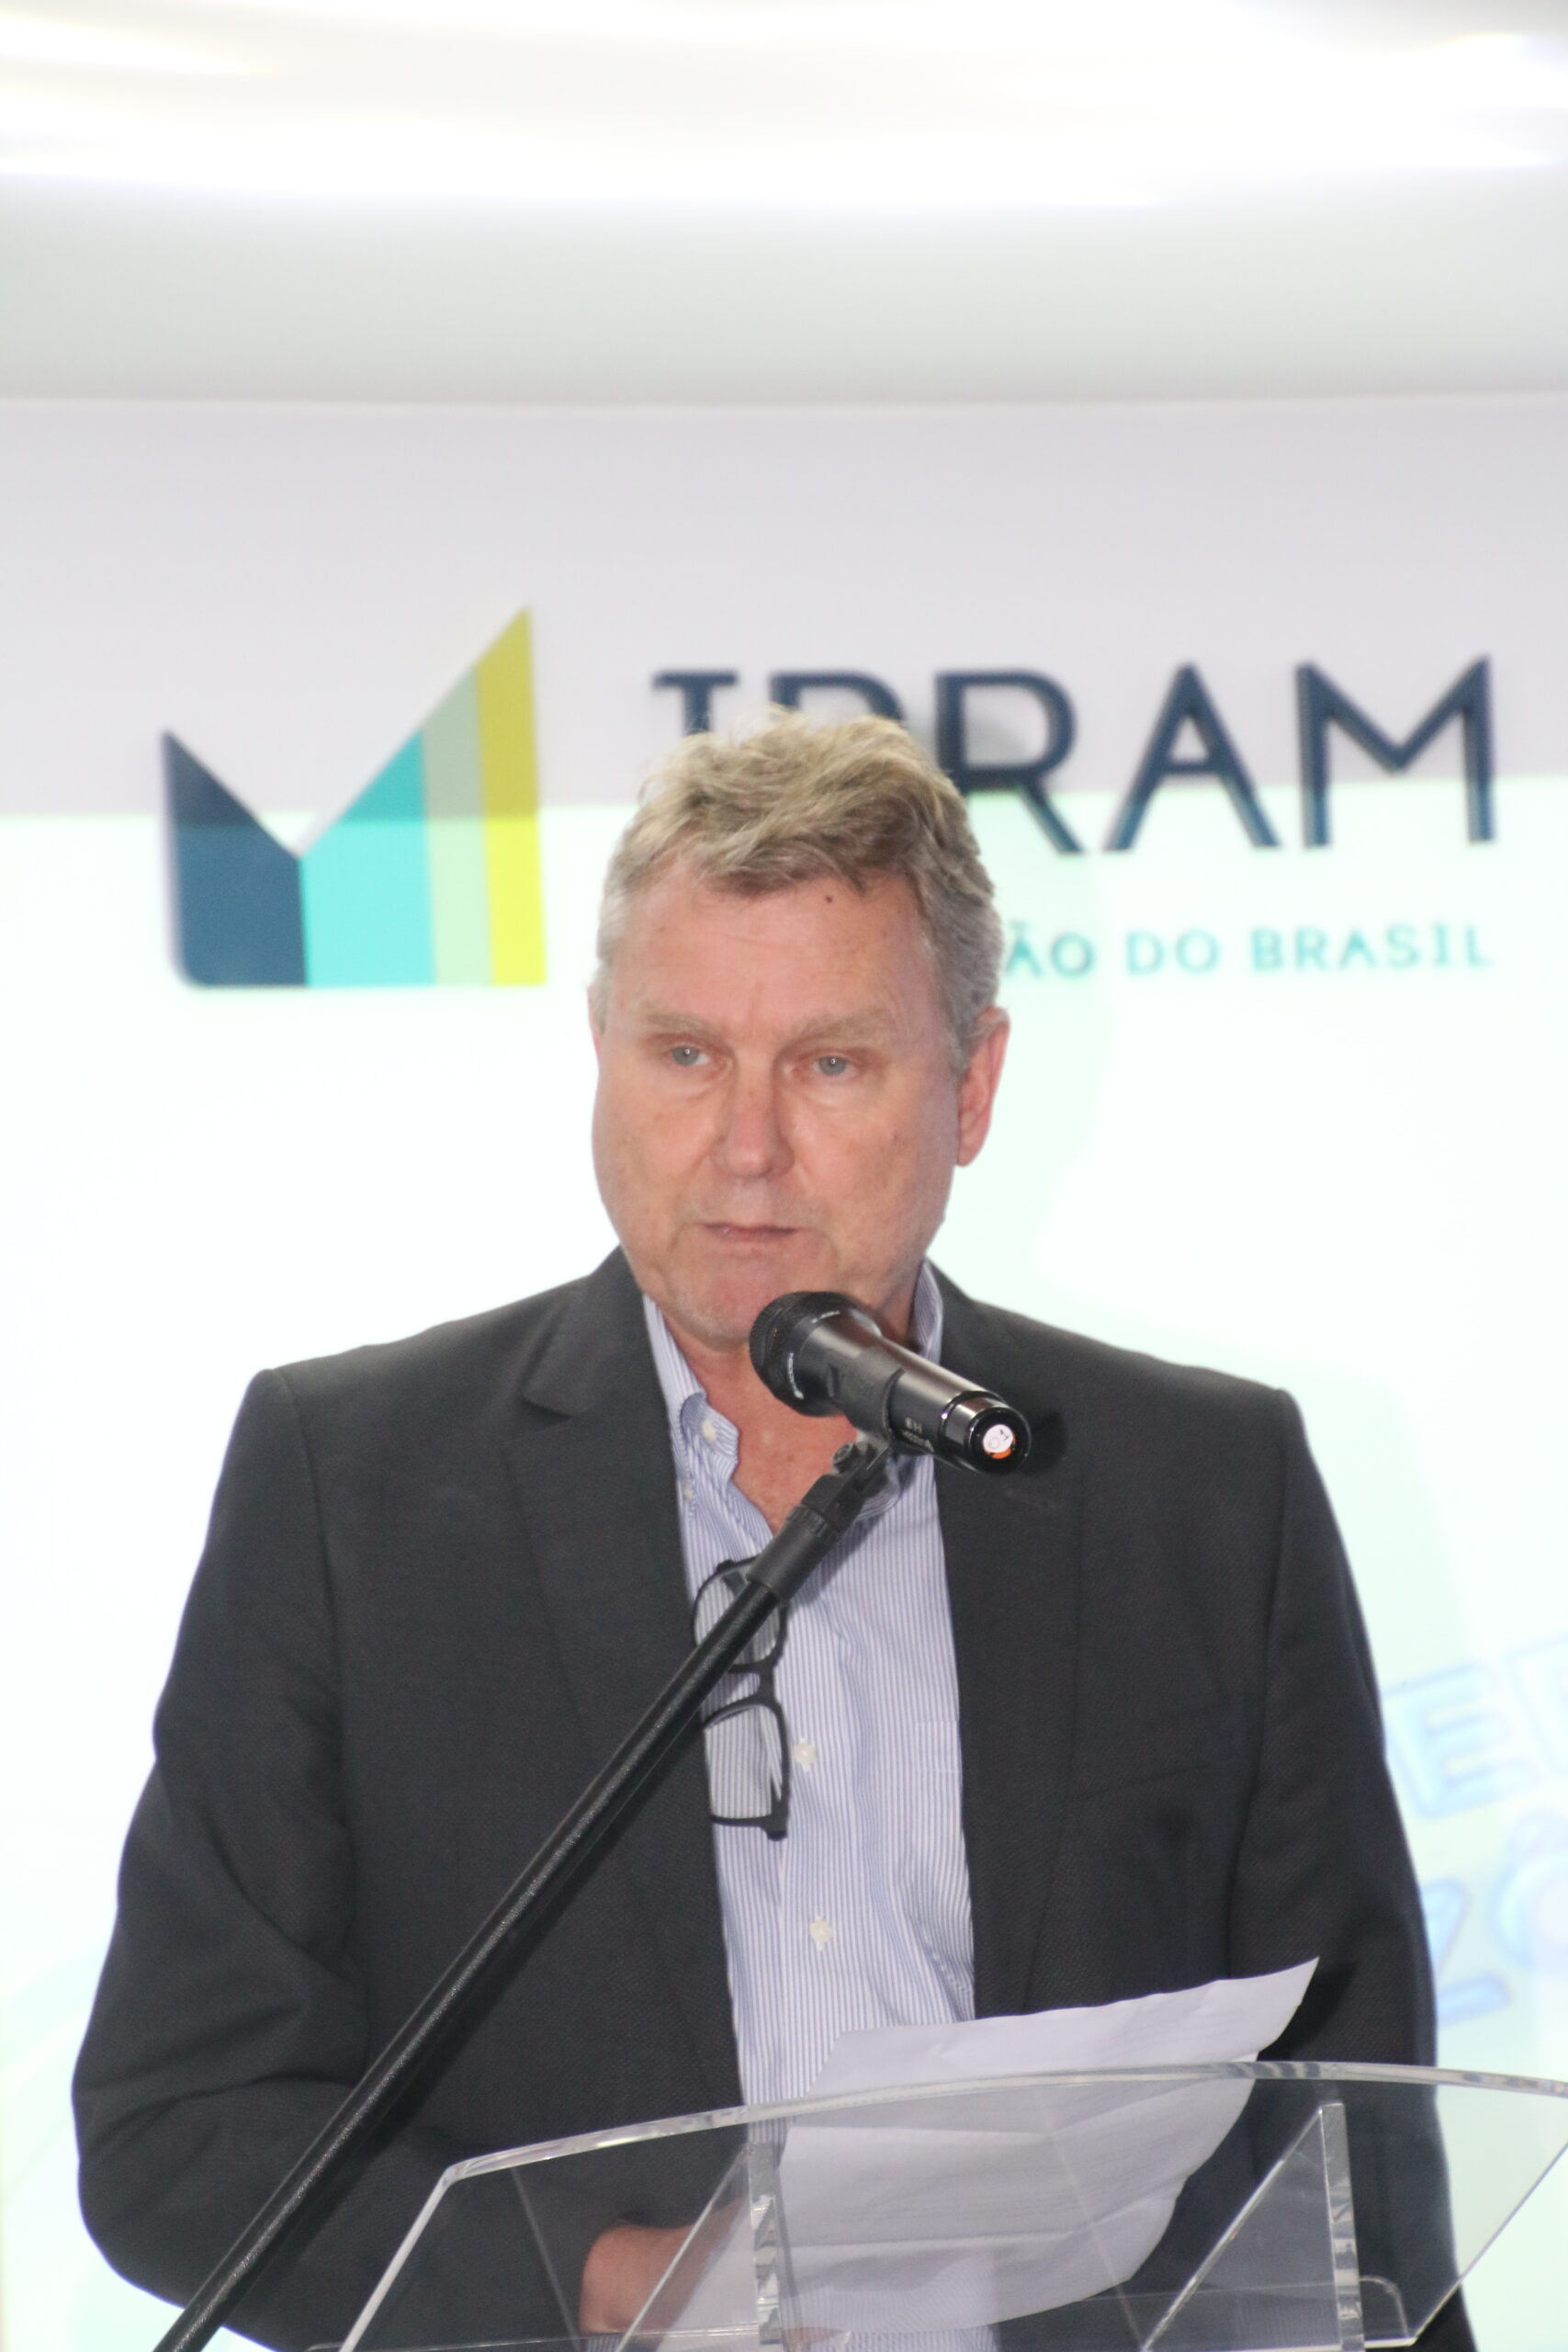 Mineração poderá atrair investimentos expressivos para o Brasil, diz ministro Sachsida